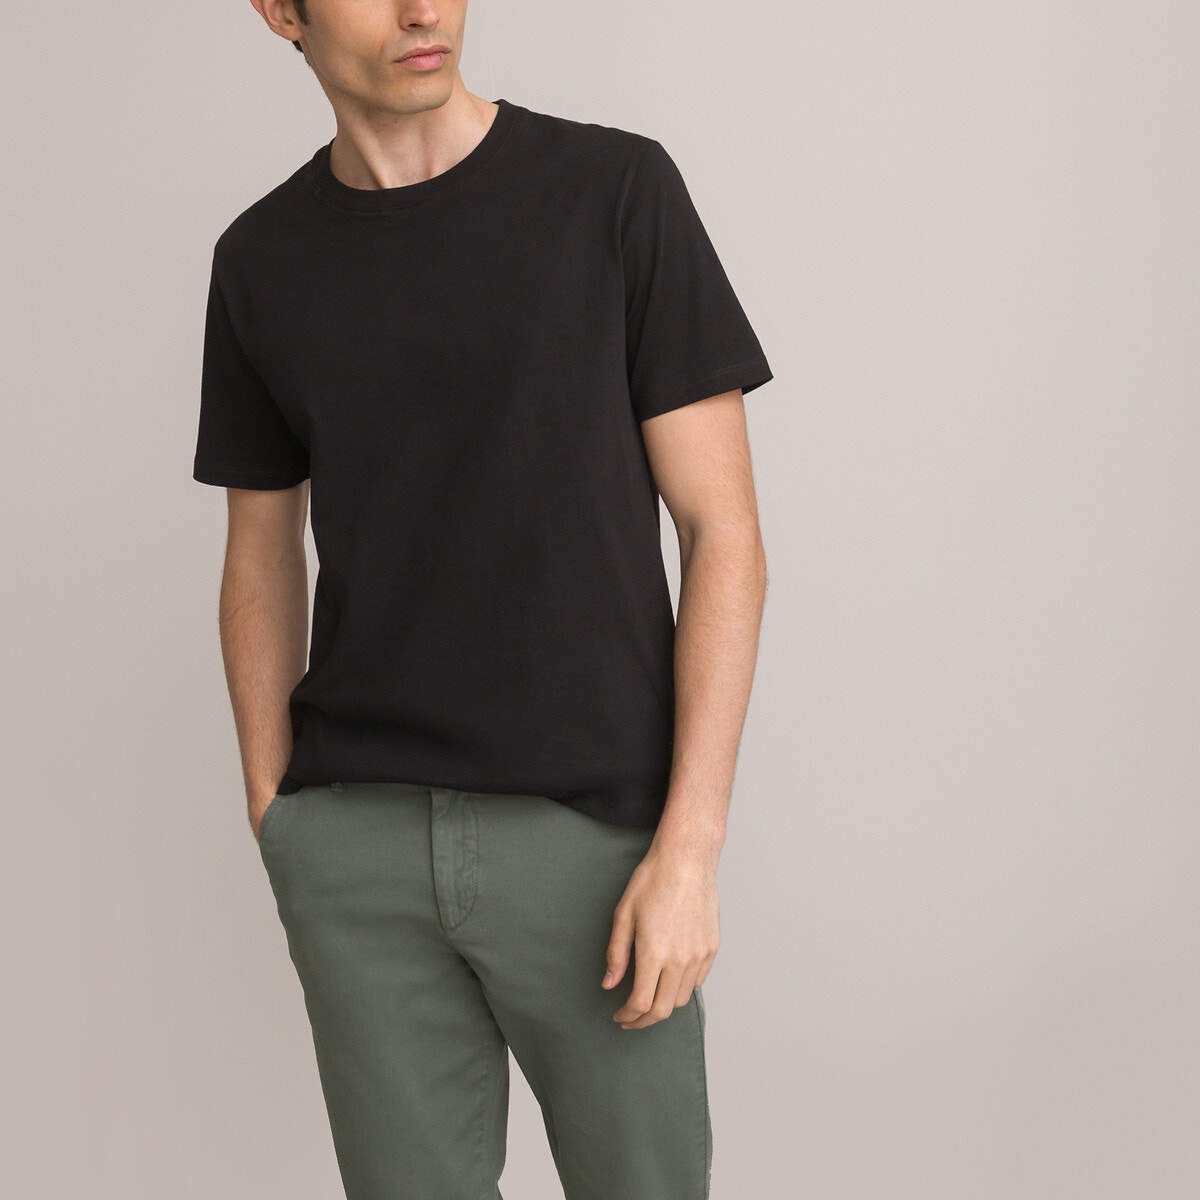 ΑΝΔΡΑΣ | Μπλούζες & Πουκάμισα | T-shirts Κοντομάνικο T-shirt από οργανικό βαμβάκι